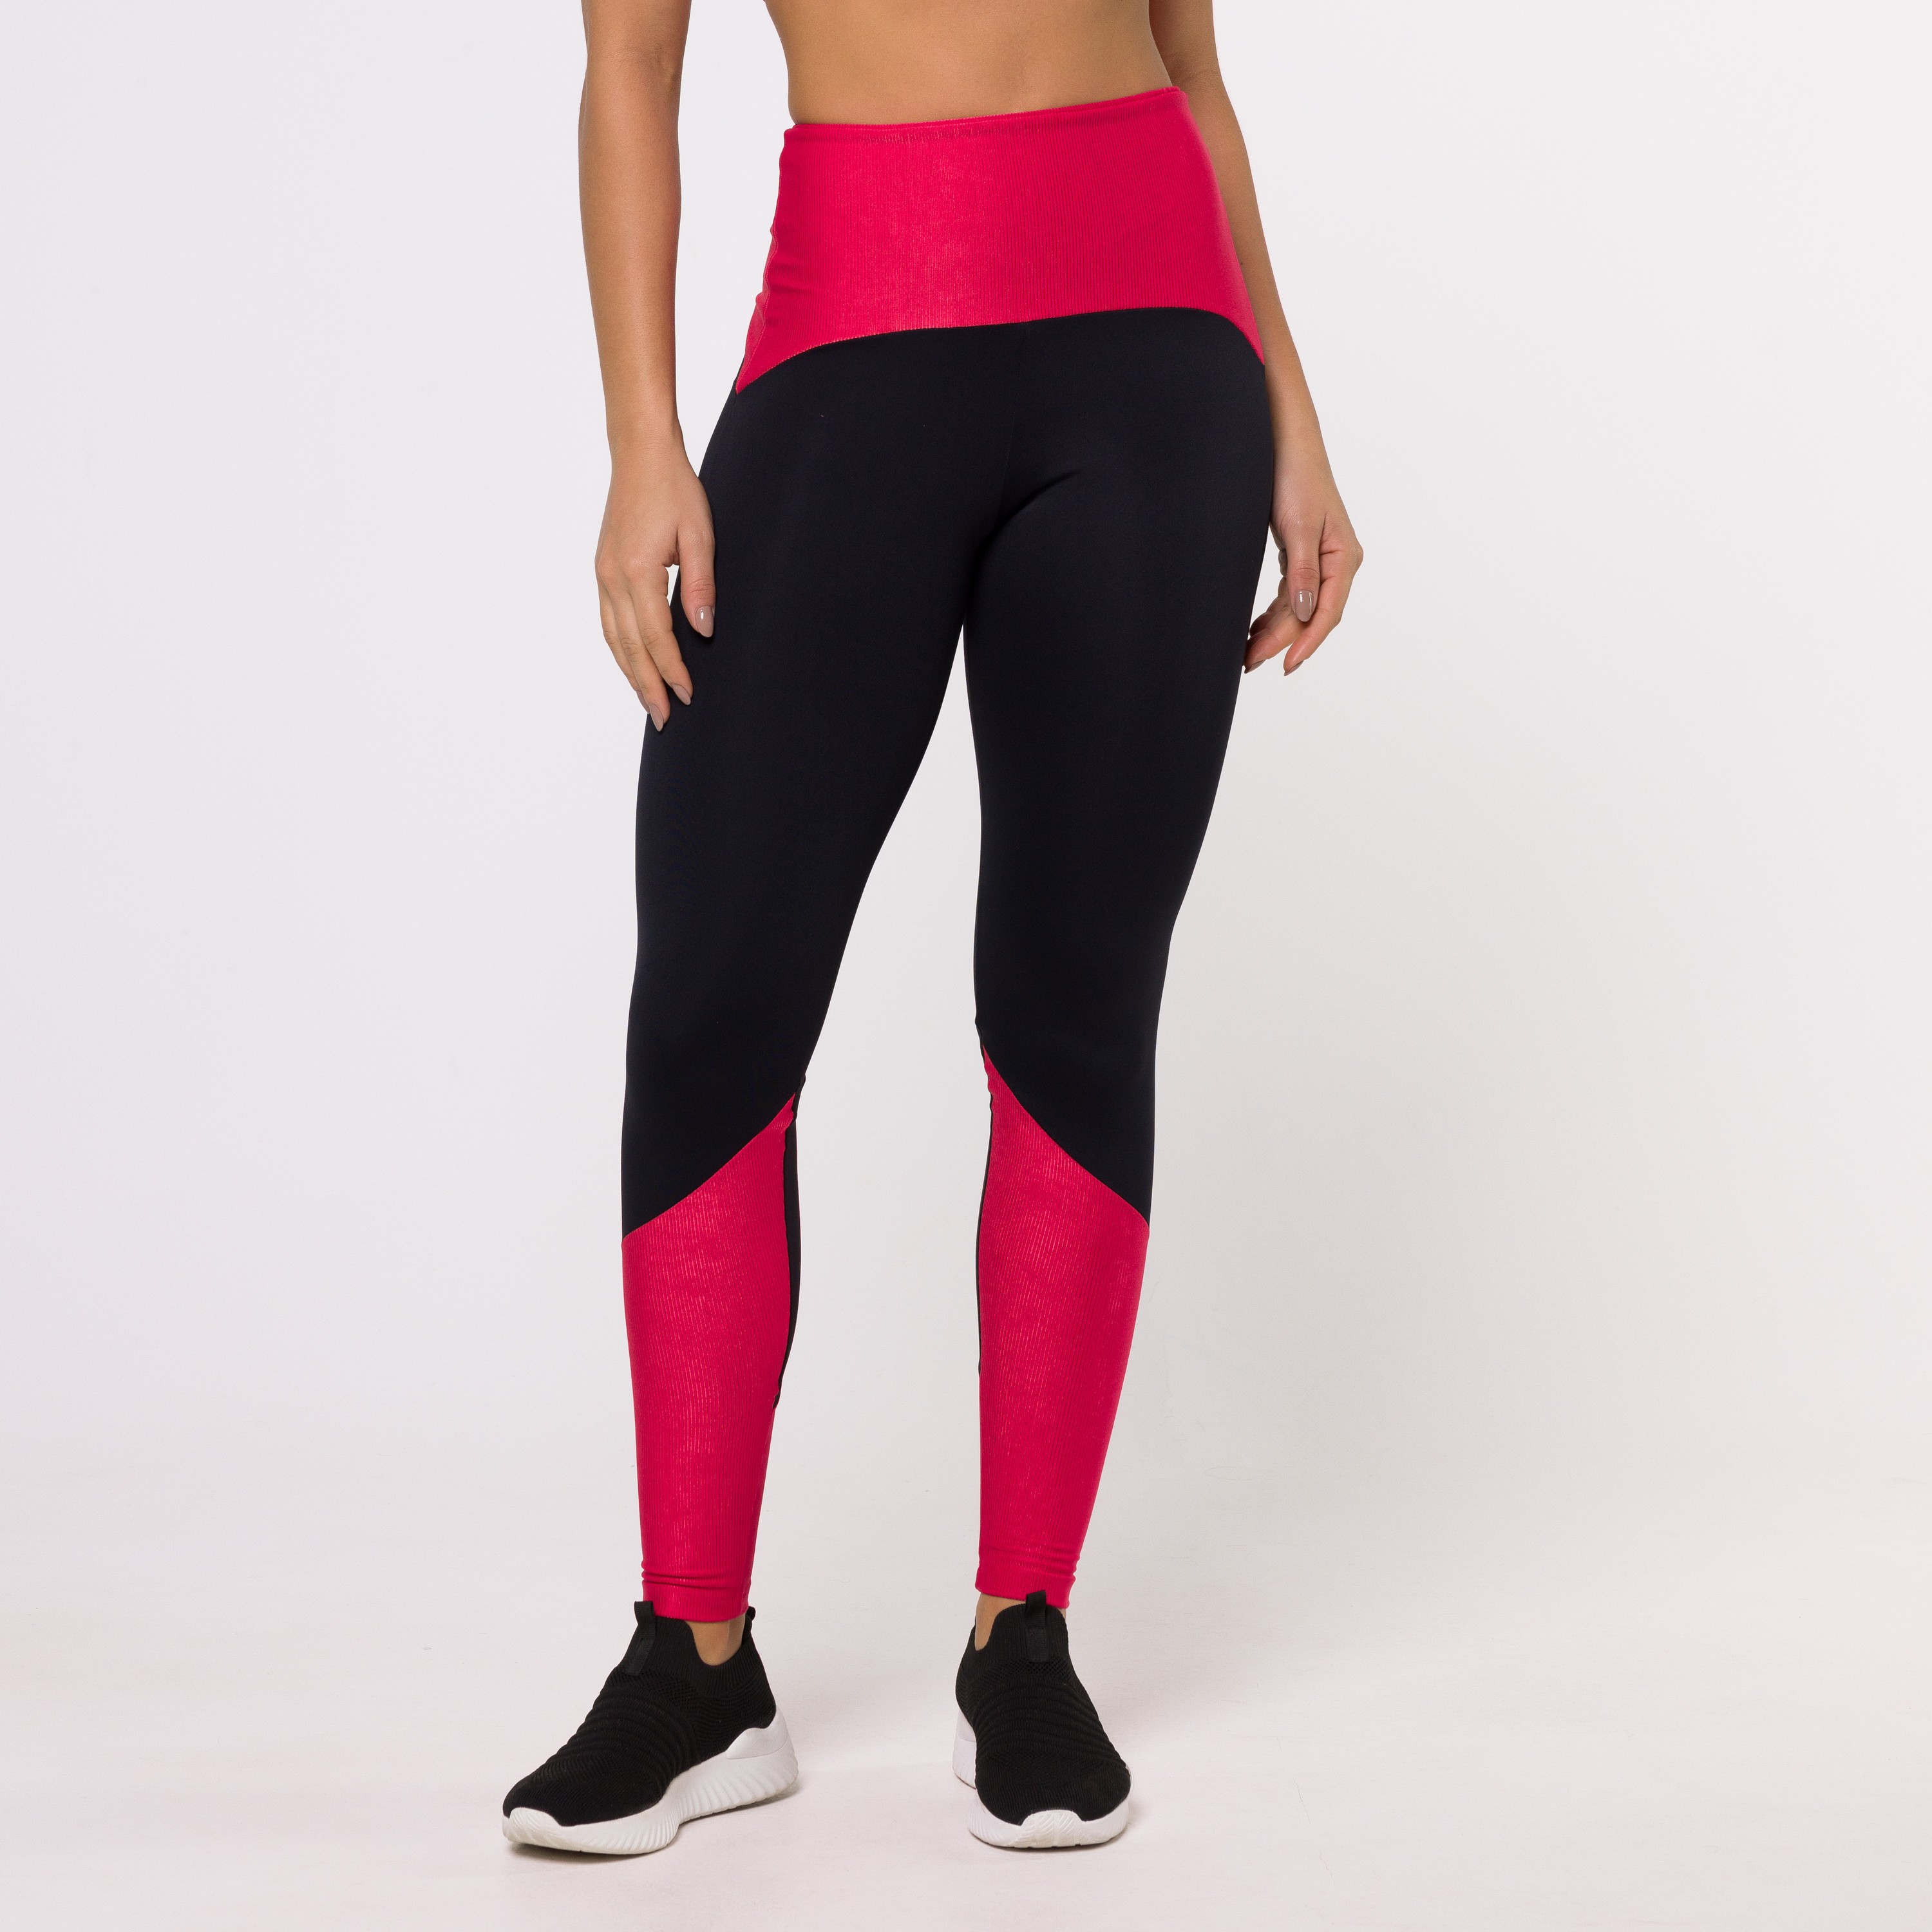 Legging Fitness Estampa Digital Degradê Rosa Pink